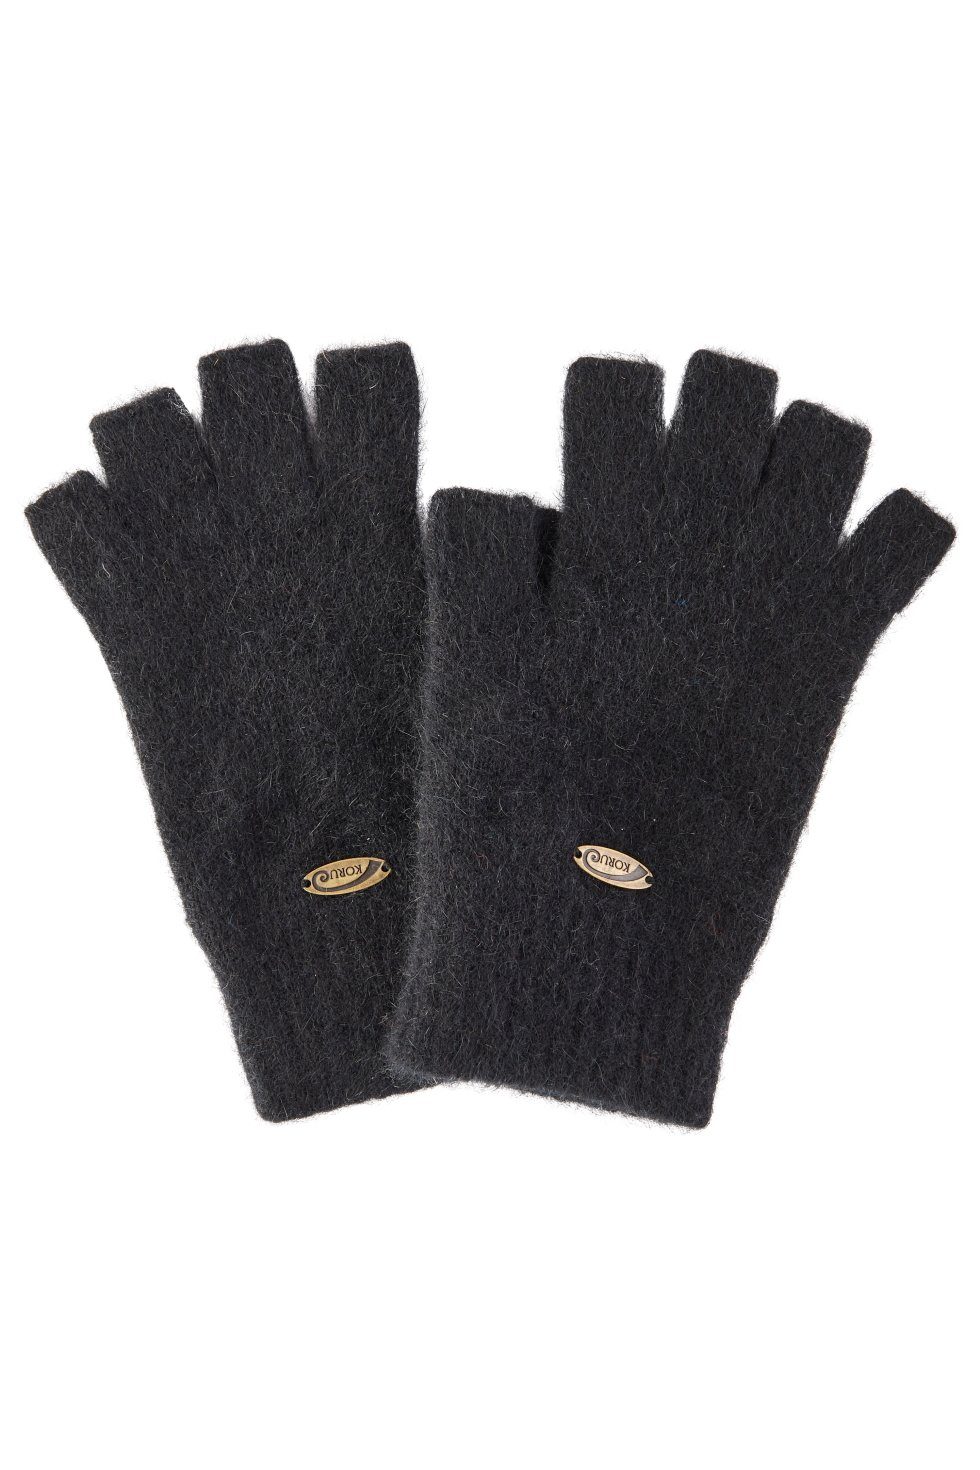 Koru Knitwear Strickhandschuhe Possum Merino Halbfinger Handschuhe aus der Possumhaarfaser